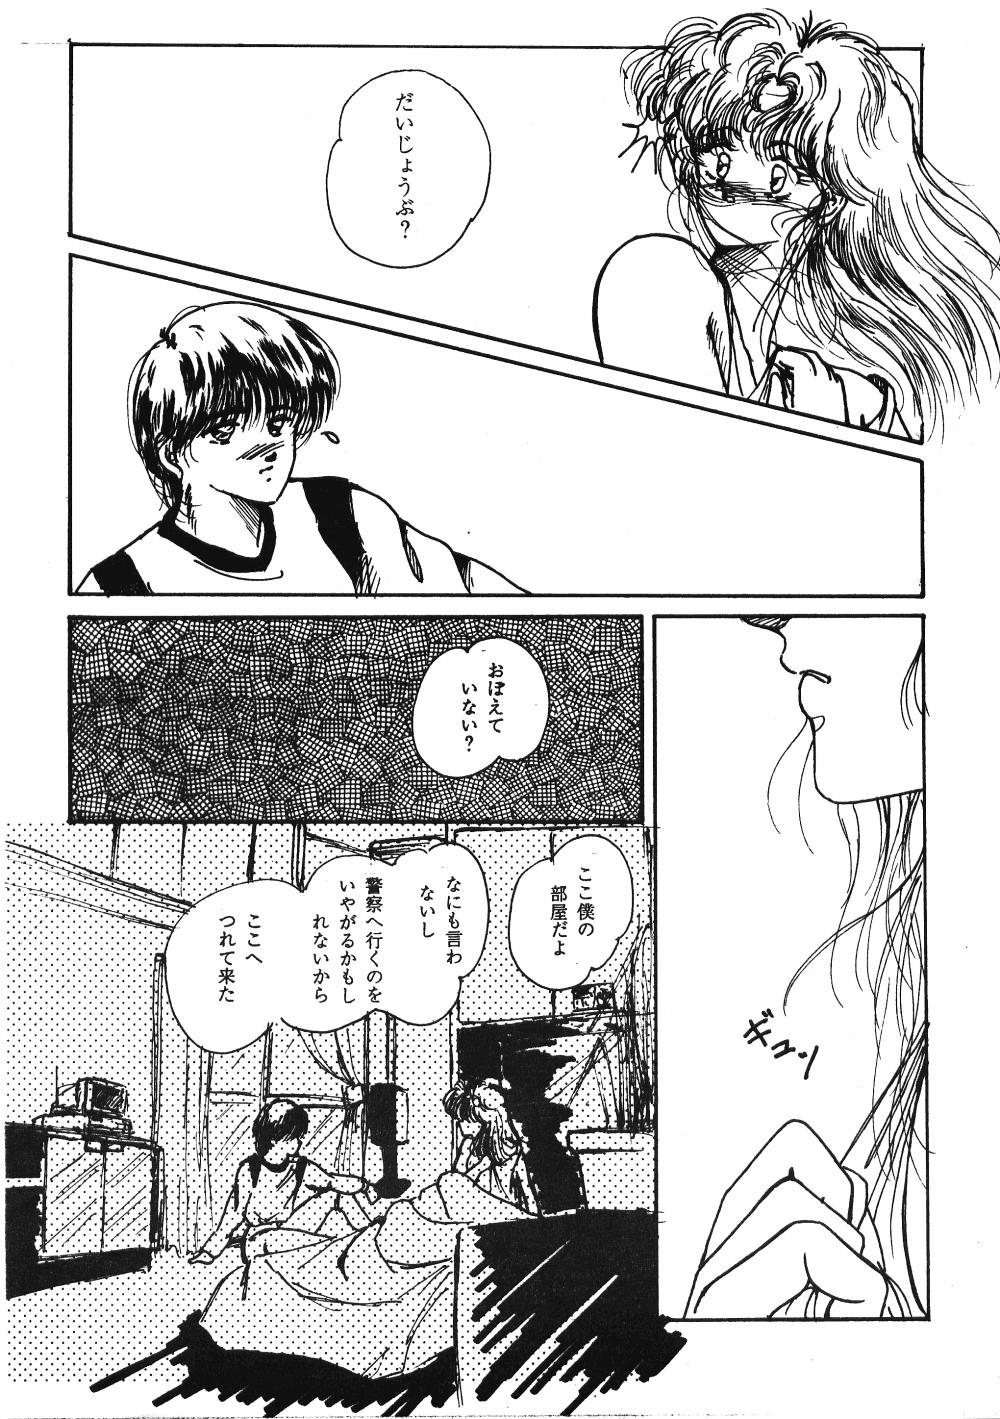 Ex Girlfriend HOHETO 3 - Ranma 12 Sola - Page 13